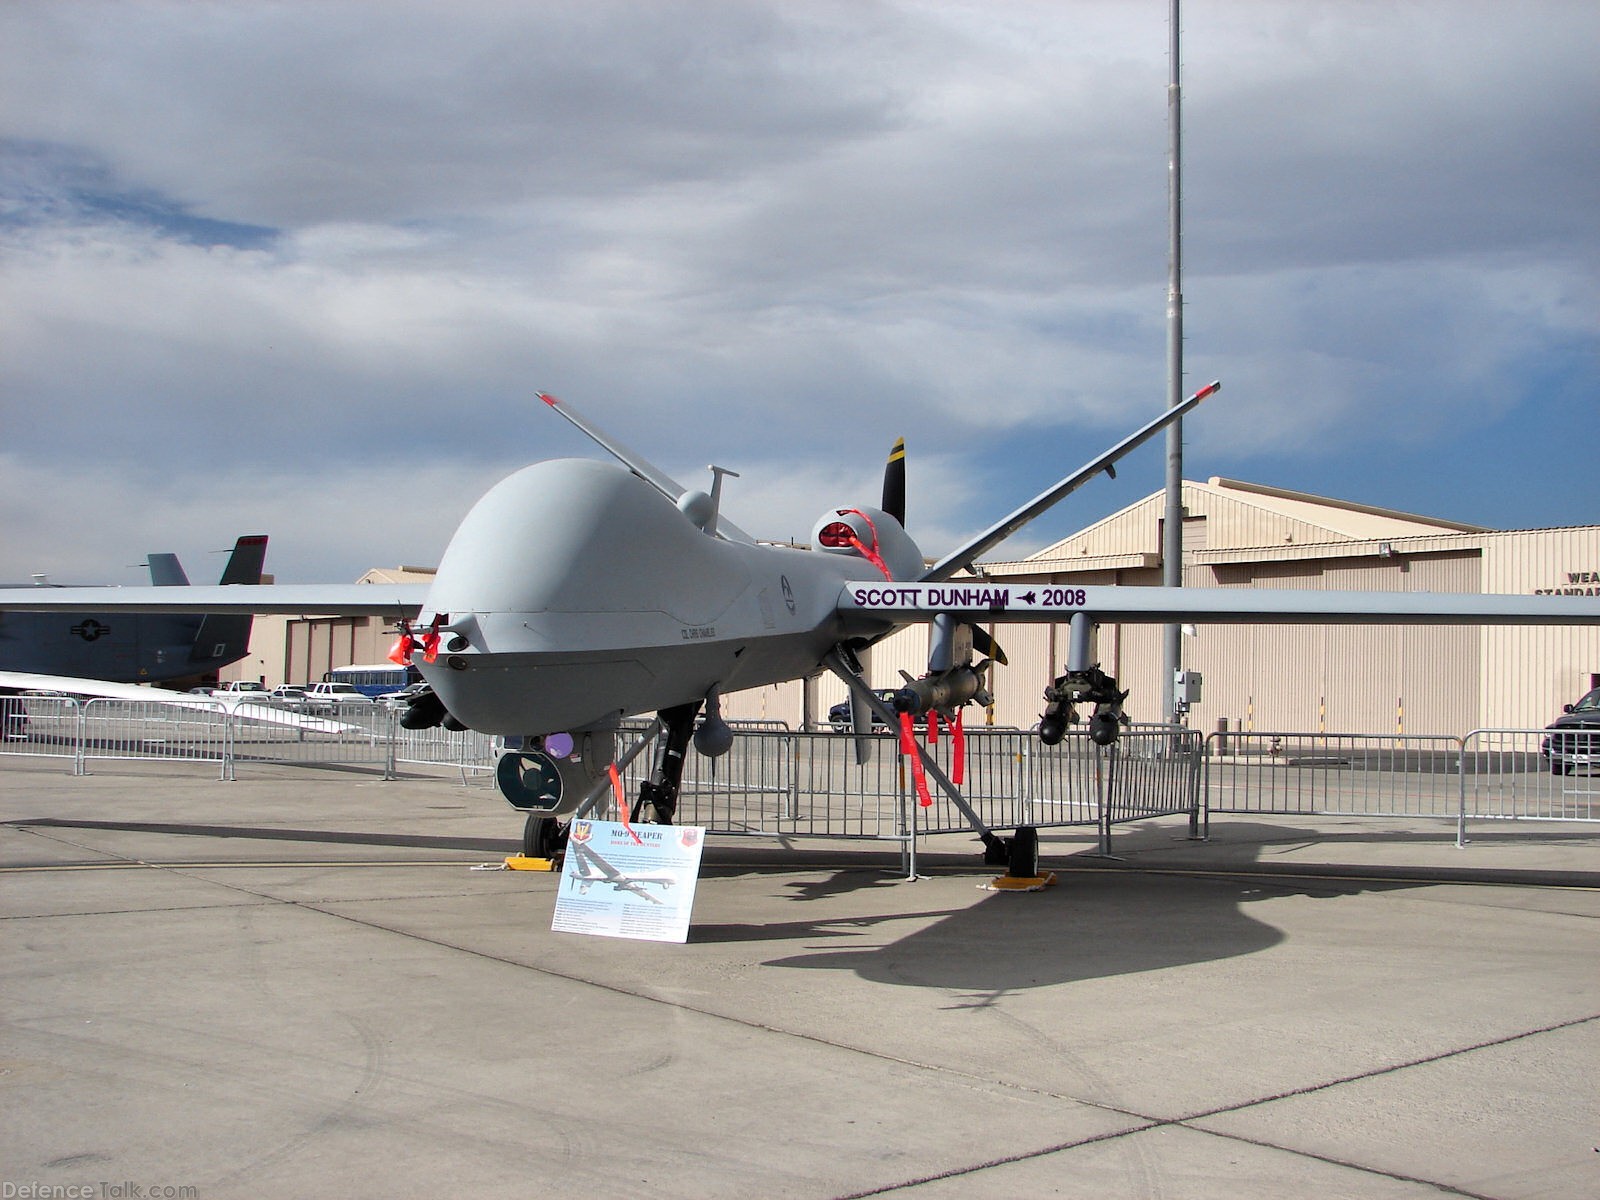 USAF MQ-9 Reaper Hunter-Killer UAV